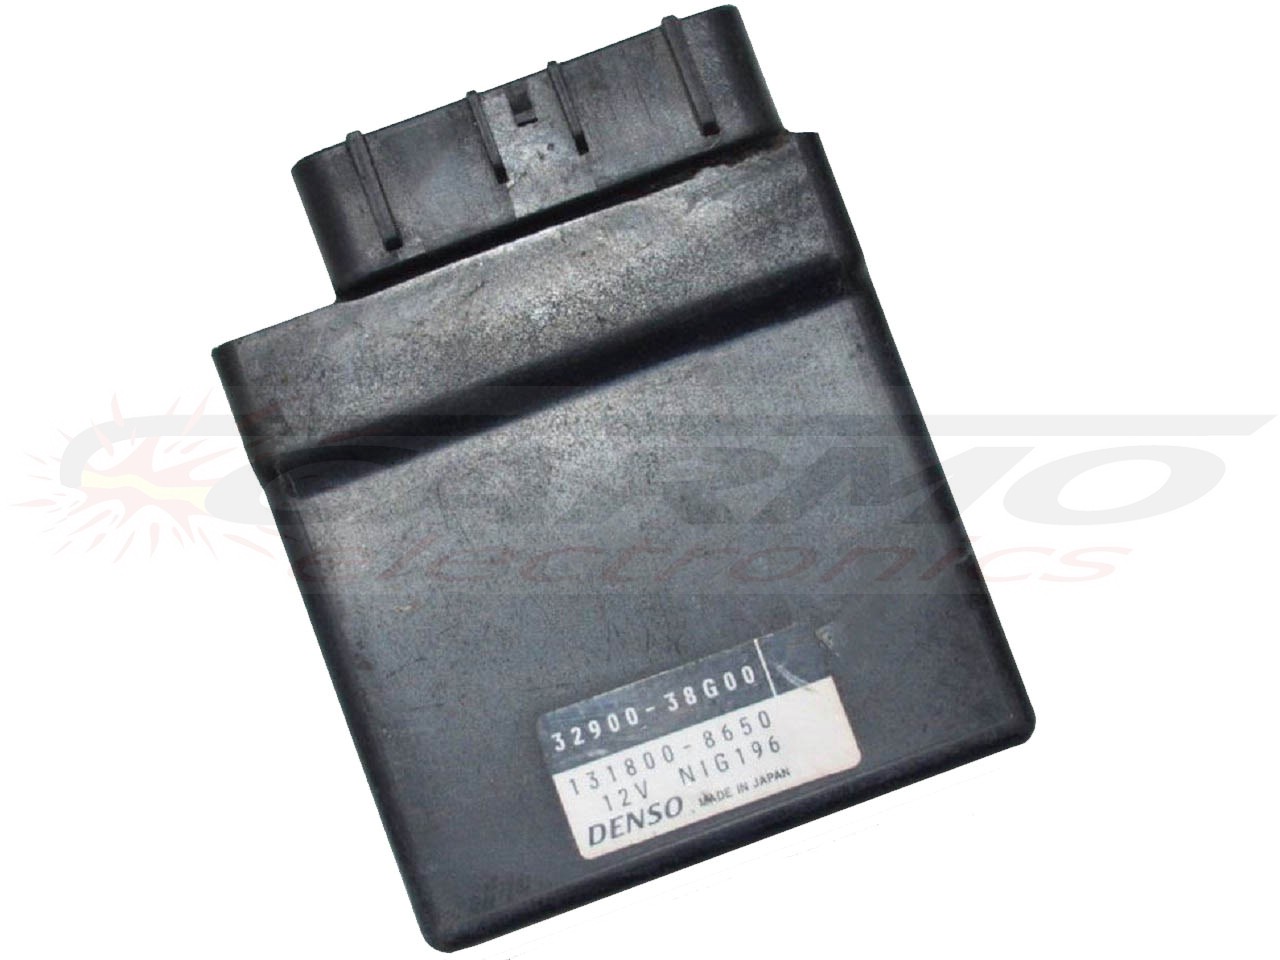 GSF650S TCI CDI dispositif de commande boîte noire (32900-38G00, 131800-8650)